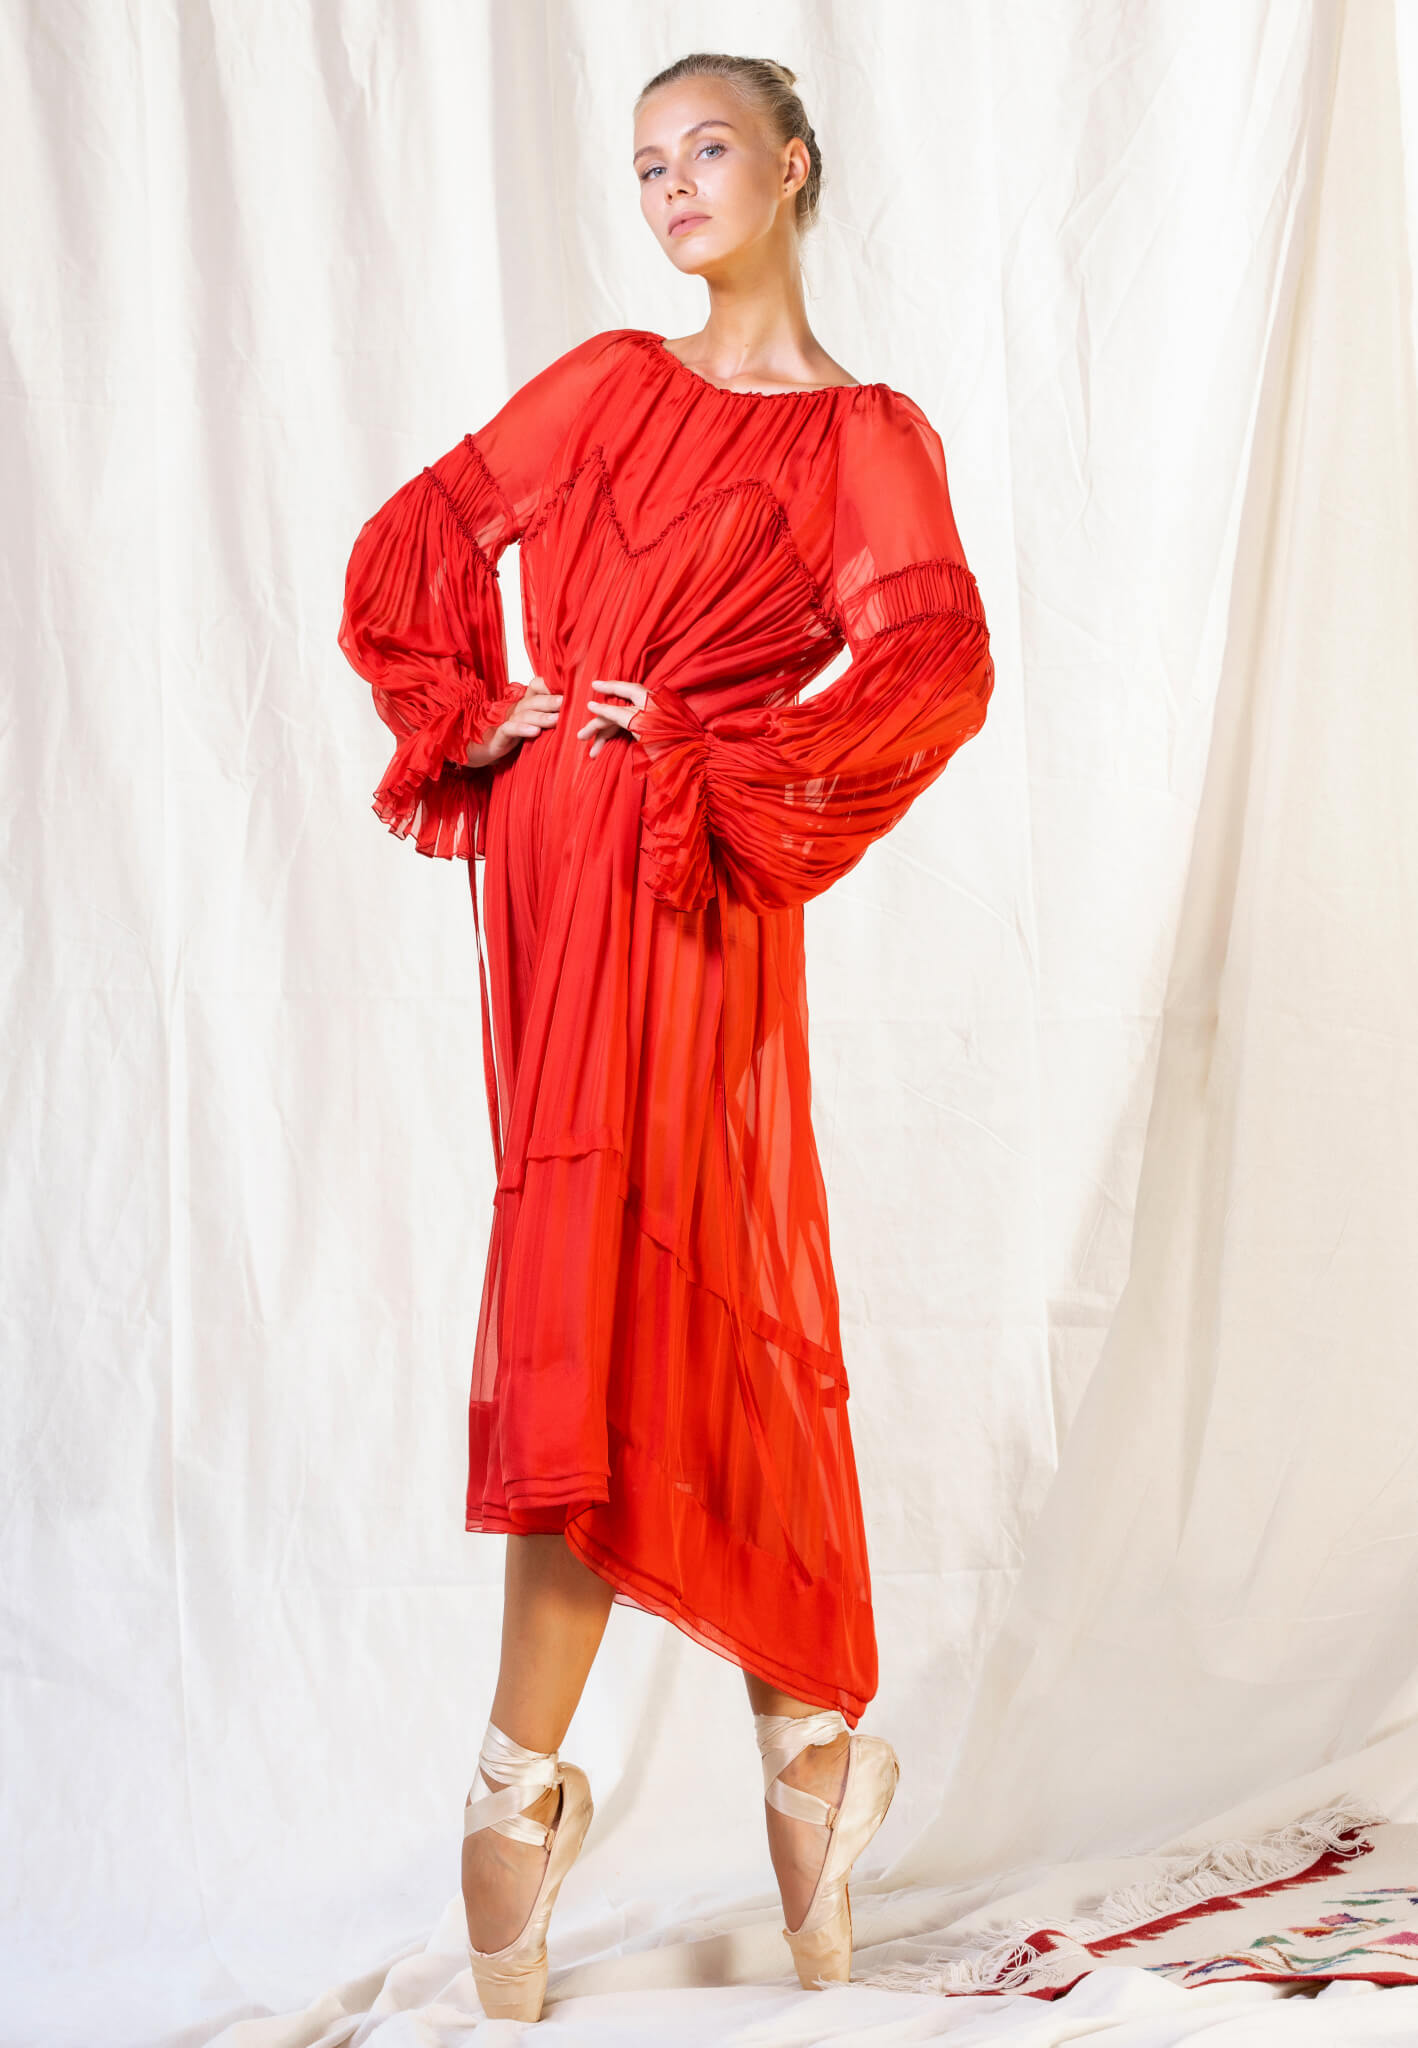 Rochie roșie de mătase Red silk dress